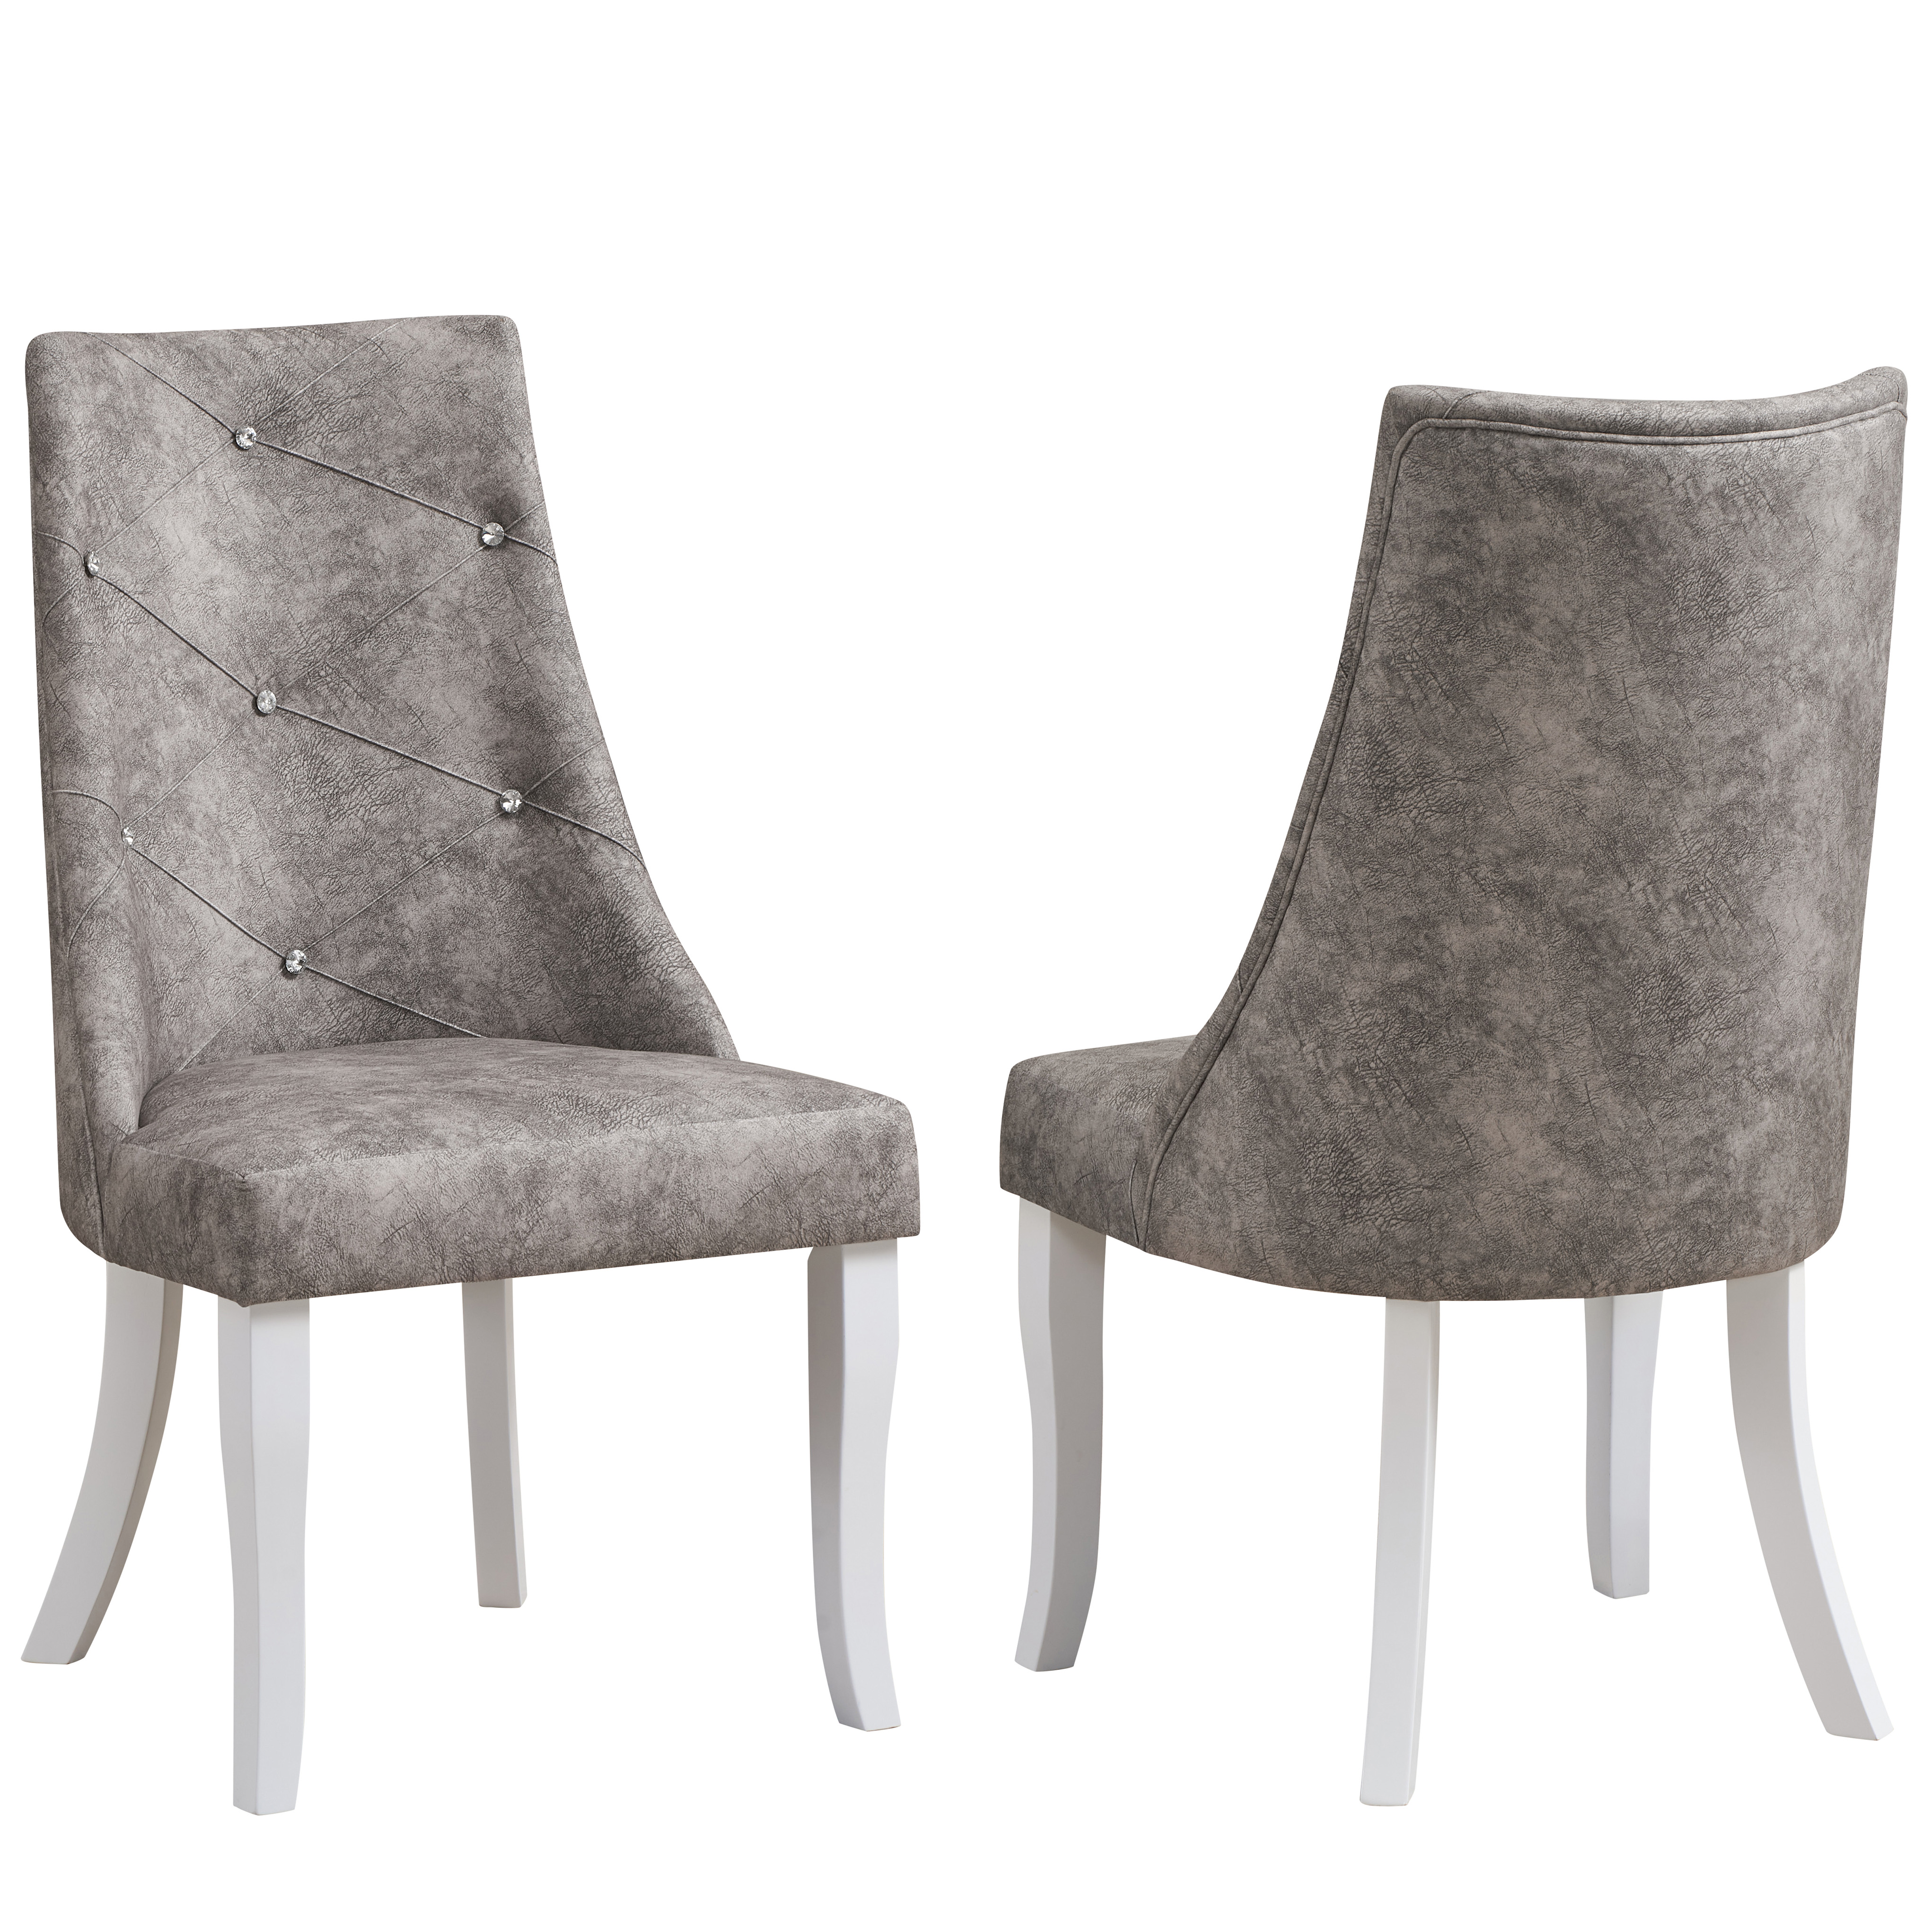 Skyrah Dining Chairs (Gray) - Set of 2